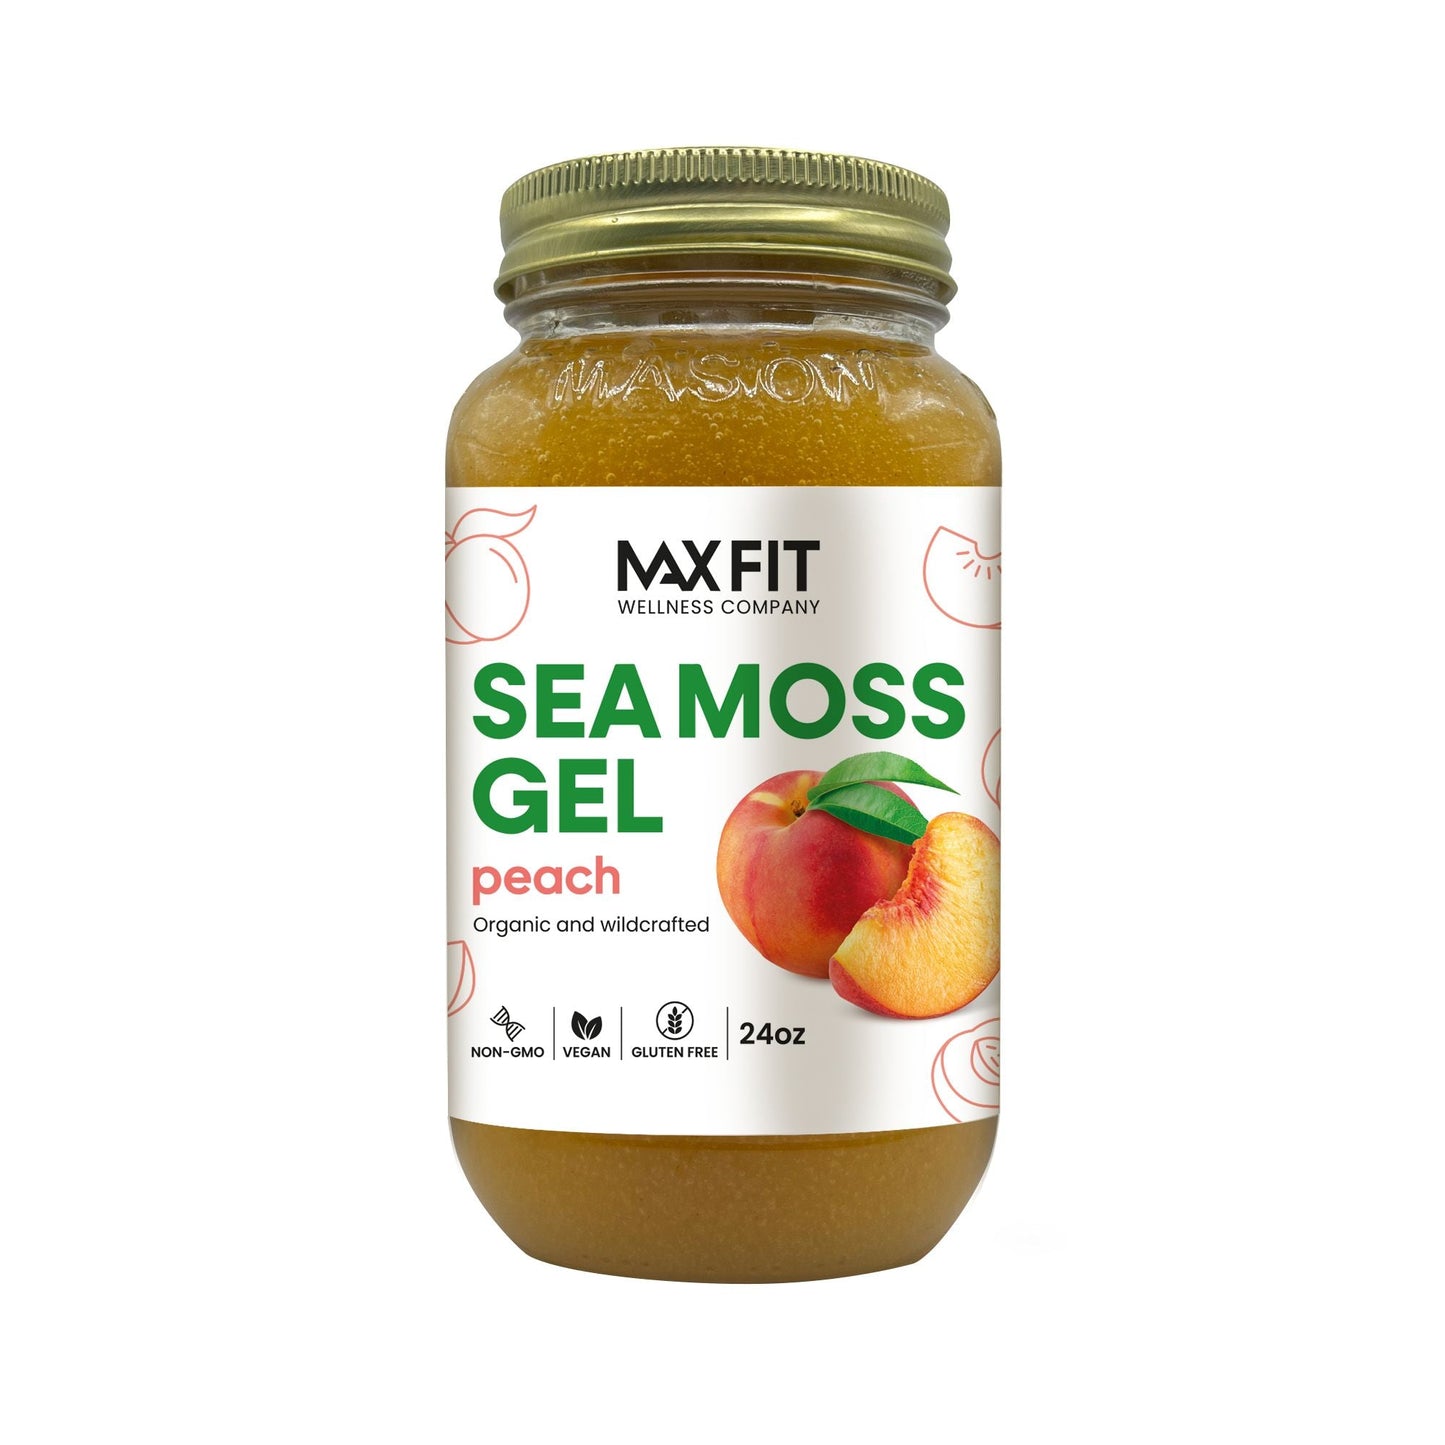 Peach Sea Moss Gel 24oz - 1800SEAMOSS.com